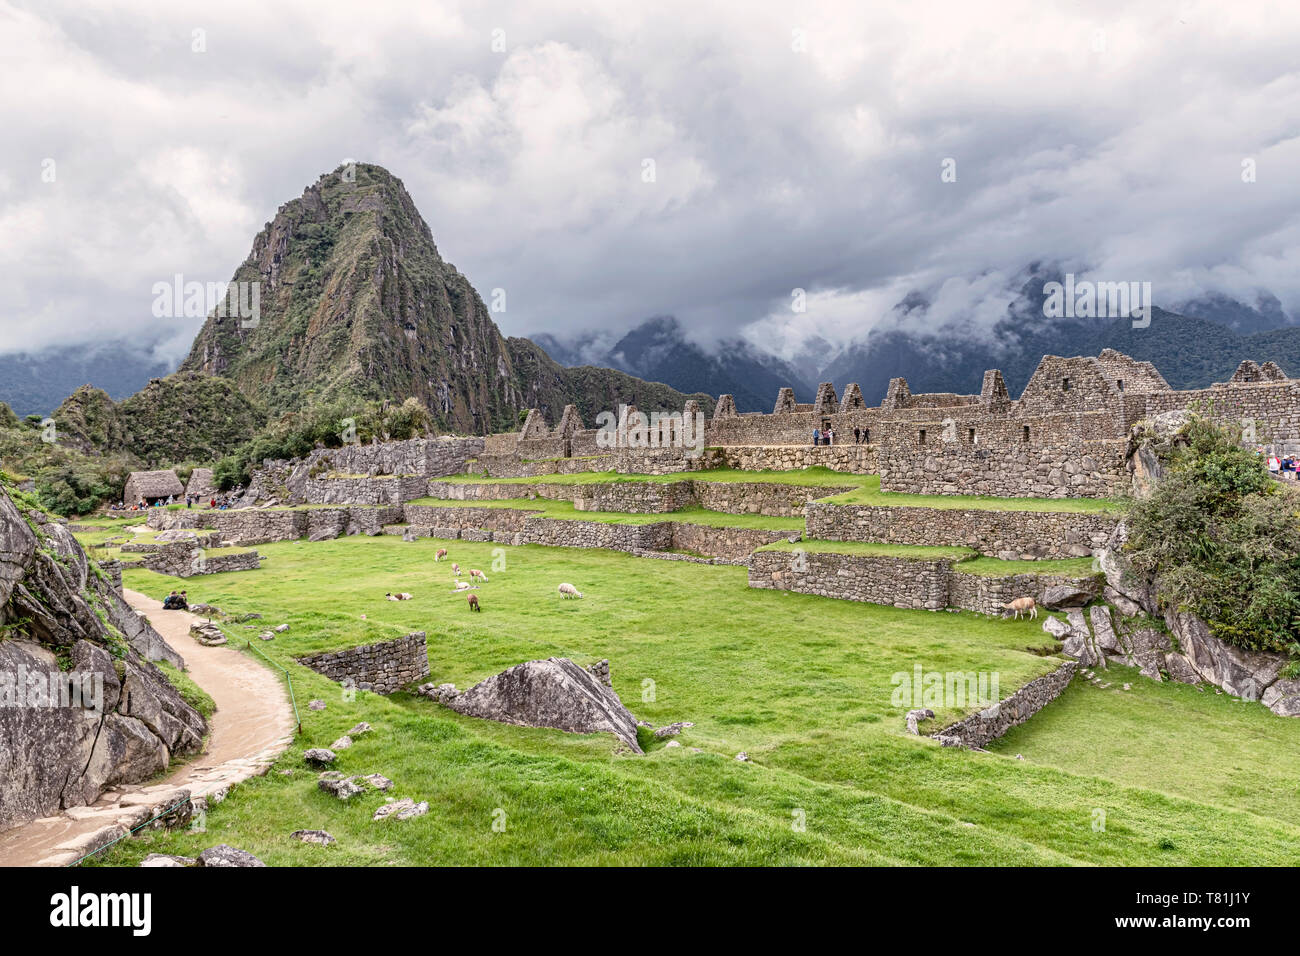 Les bâtiments et les habitations en structures Incas de Machu Picchu au Pérou. Wayna, Huayna Picchu pic de montagne à l'arrière-plan. Banque D'Images